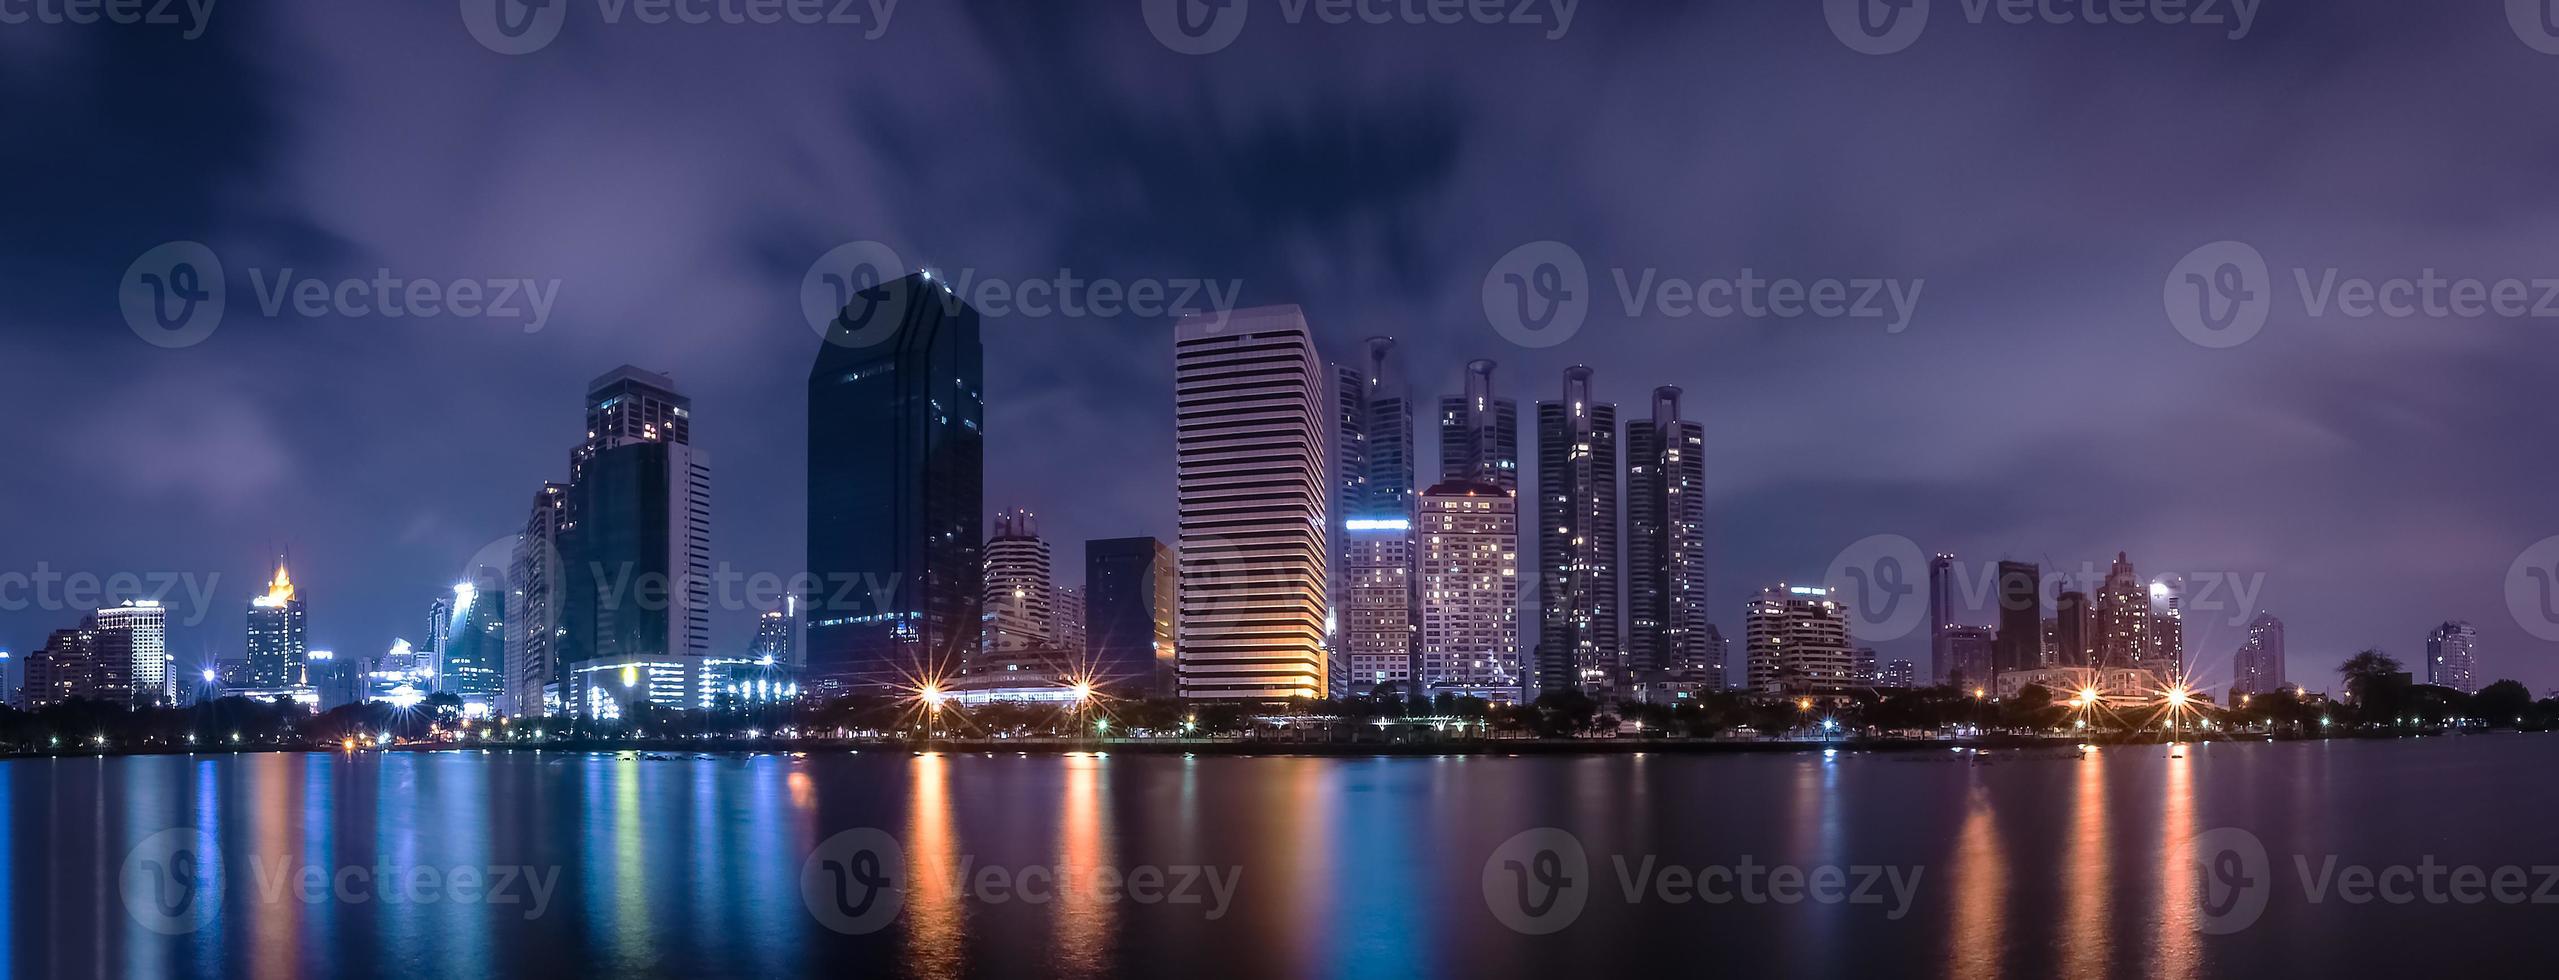 cidade grande na vida noturna com reflexo da onda de água foto